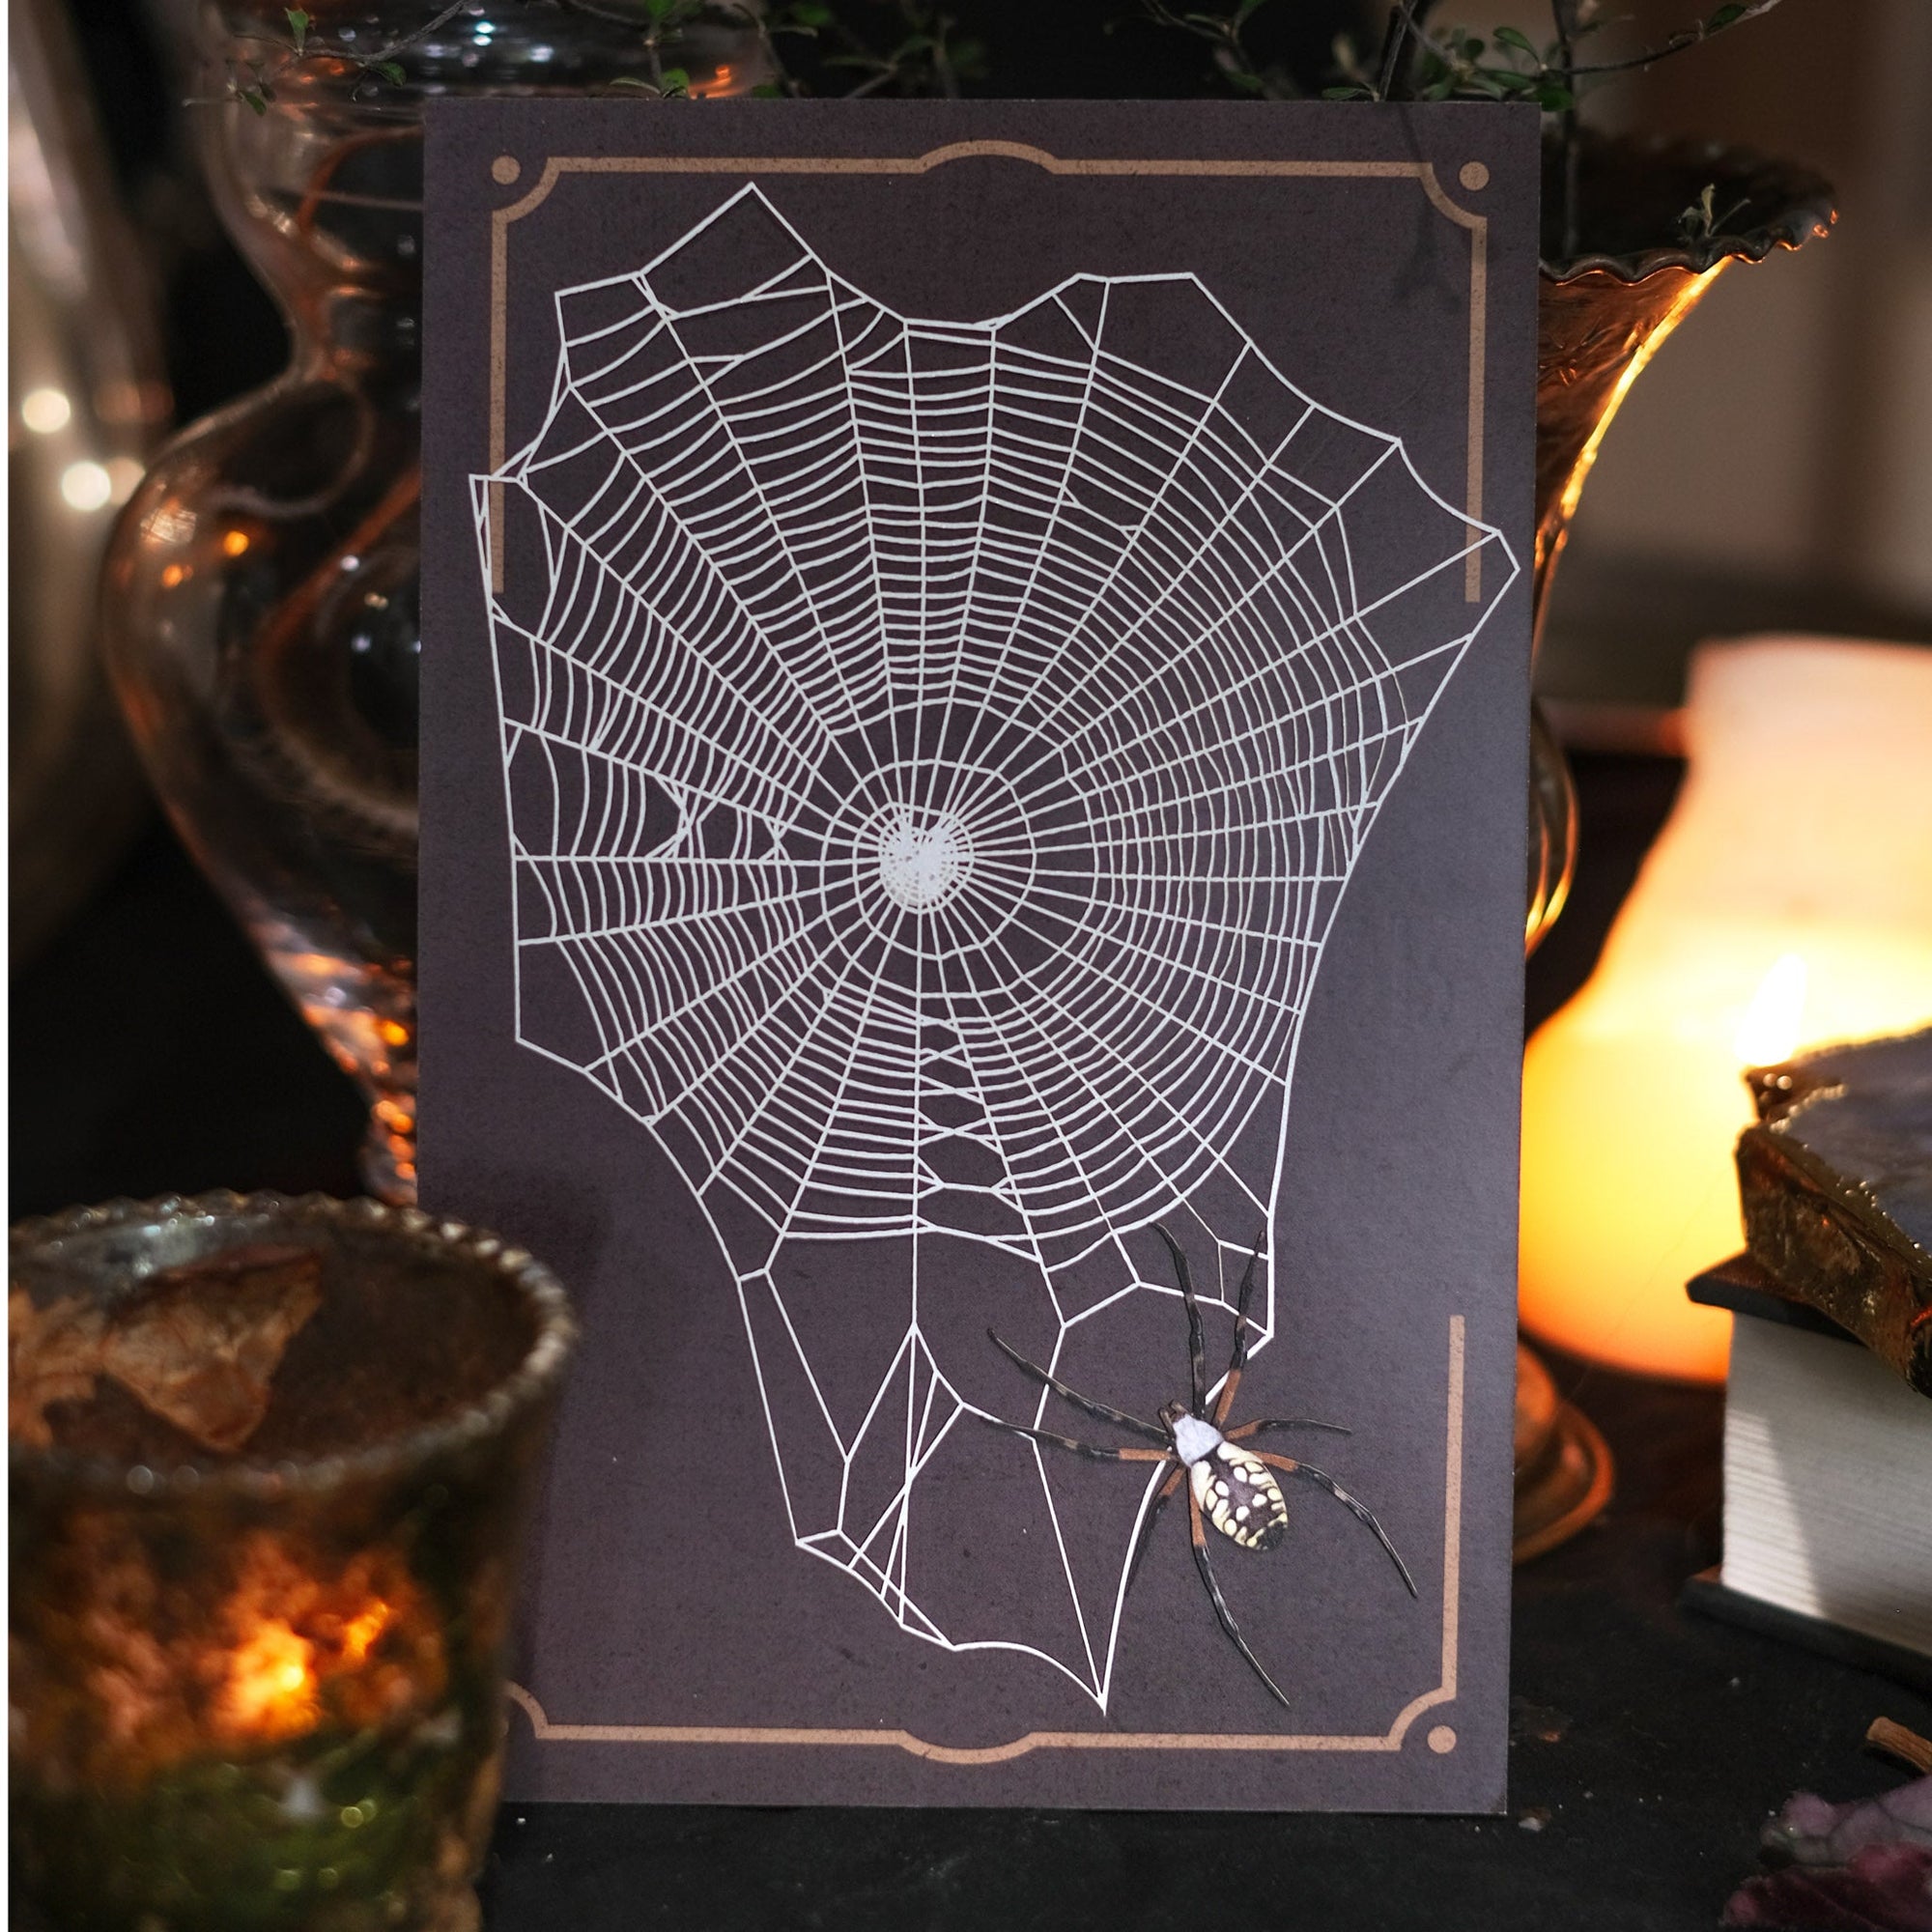 💫Spooky💫 'Weaver' Spiderweb & Spider Set - Artist Discount